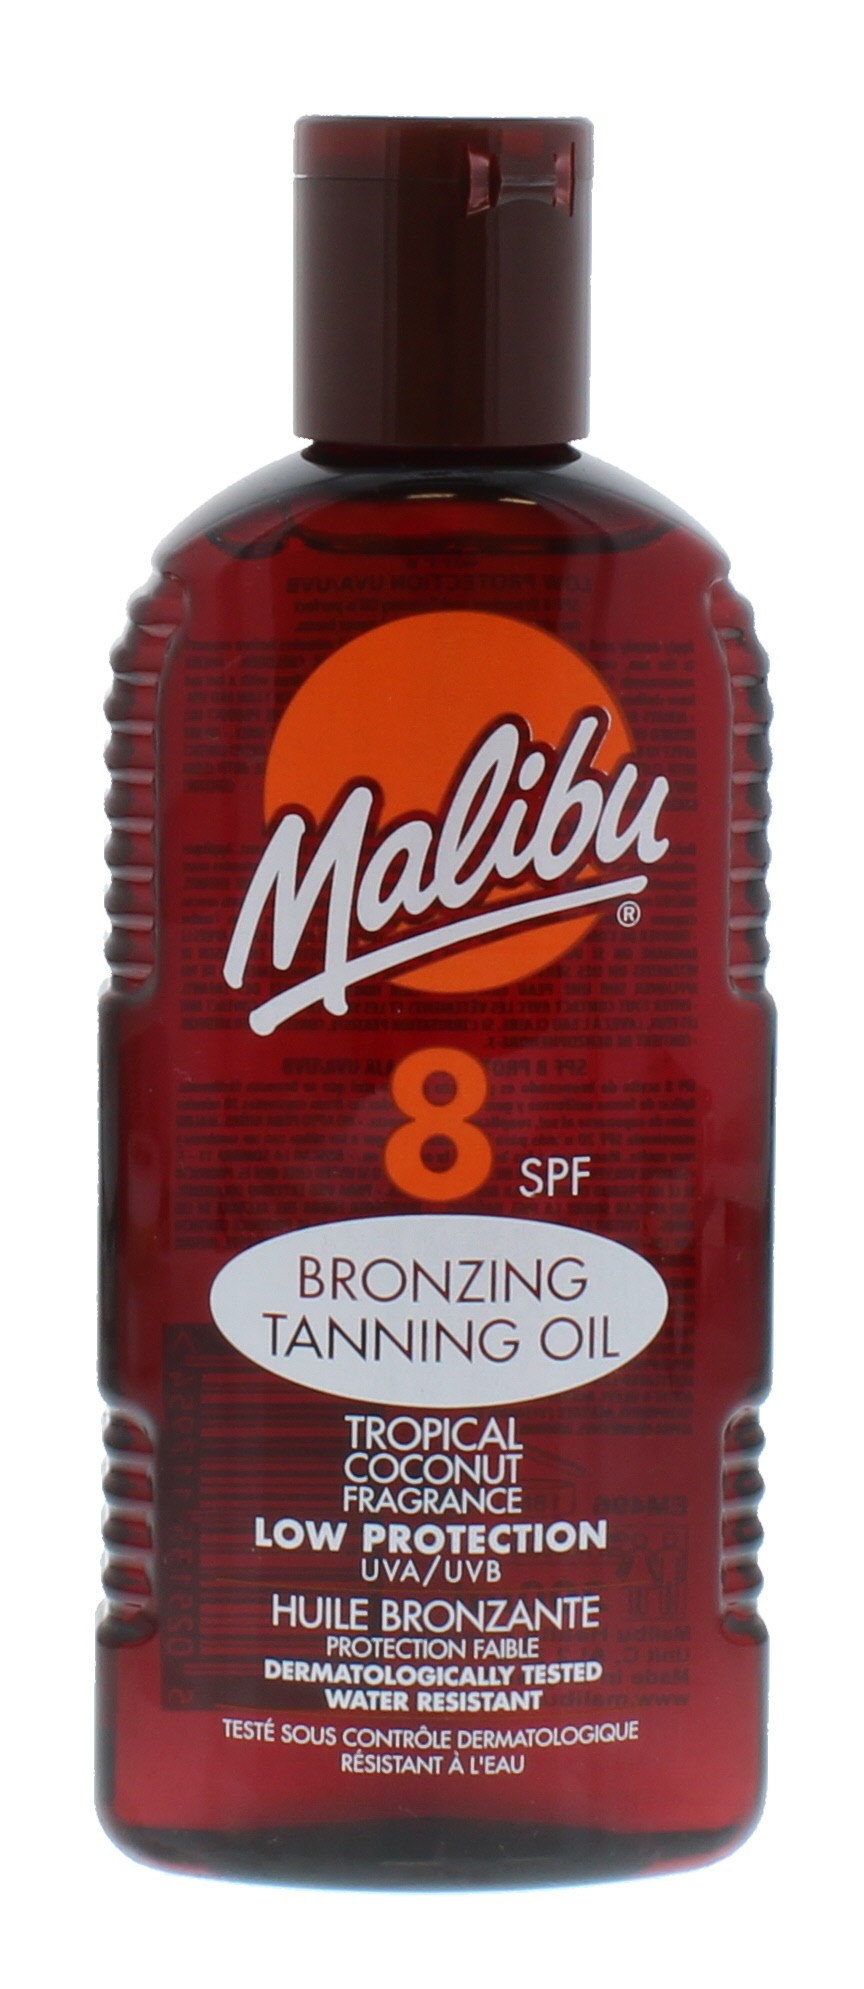 Malibu Spf 8 Bronzing Tanning Oil